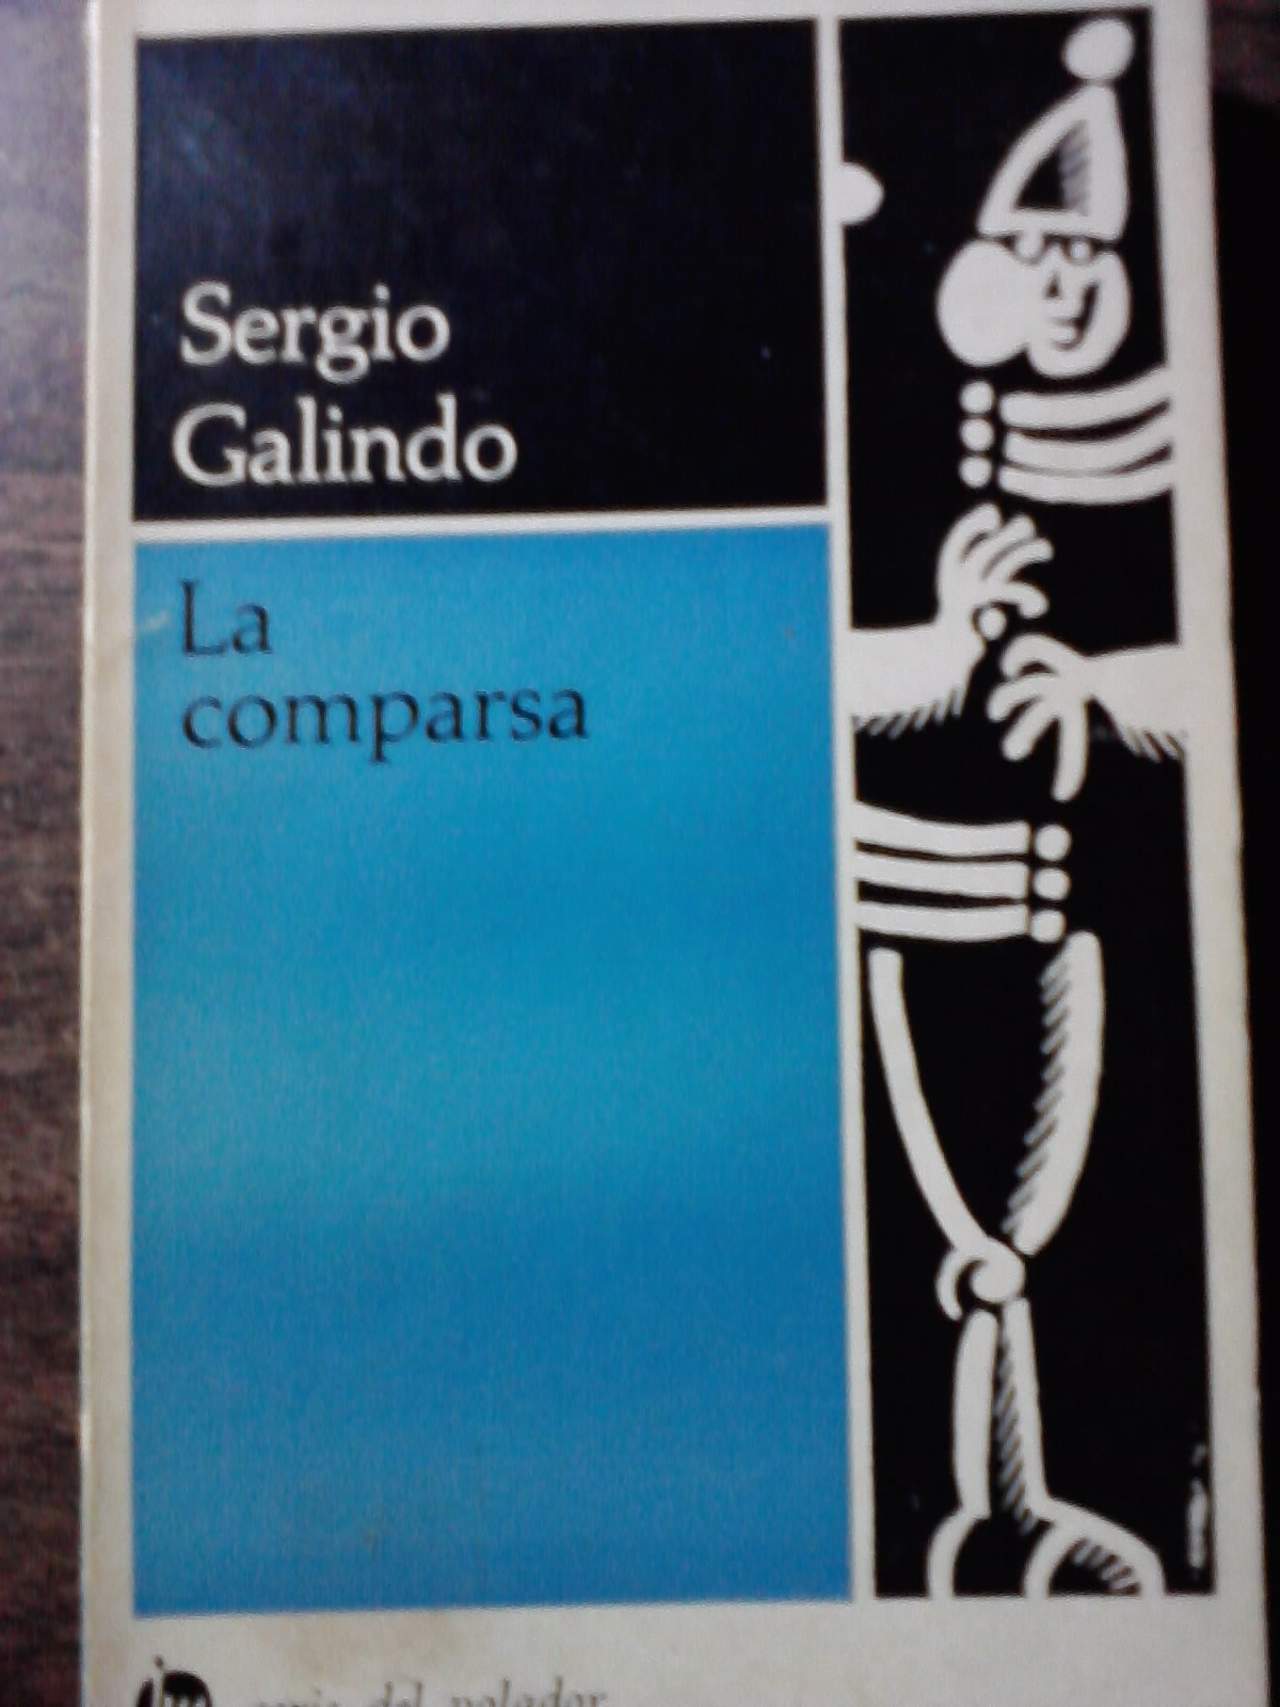 Popular. La novela, La comparsa, es una de las obras más conocidas del escritor mexicano Sergio Galindo, editada varias veces.